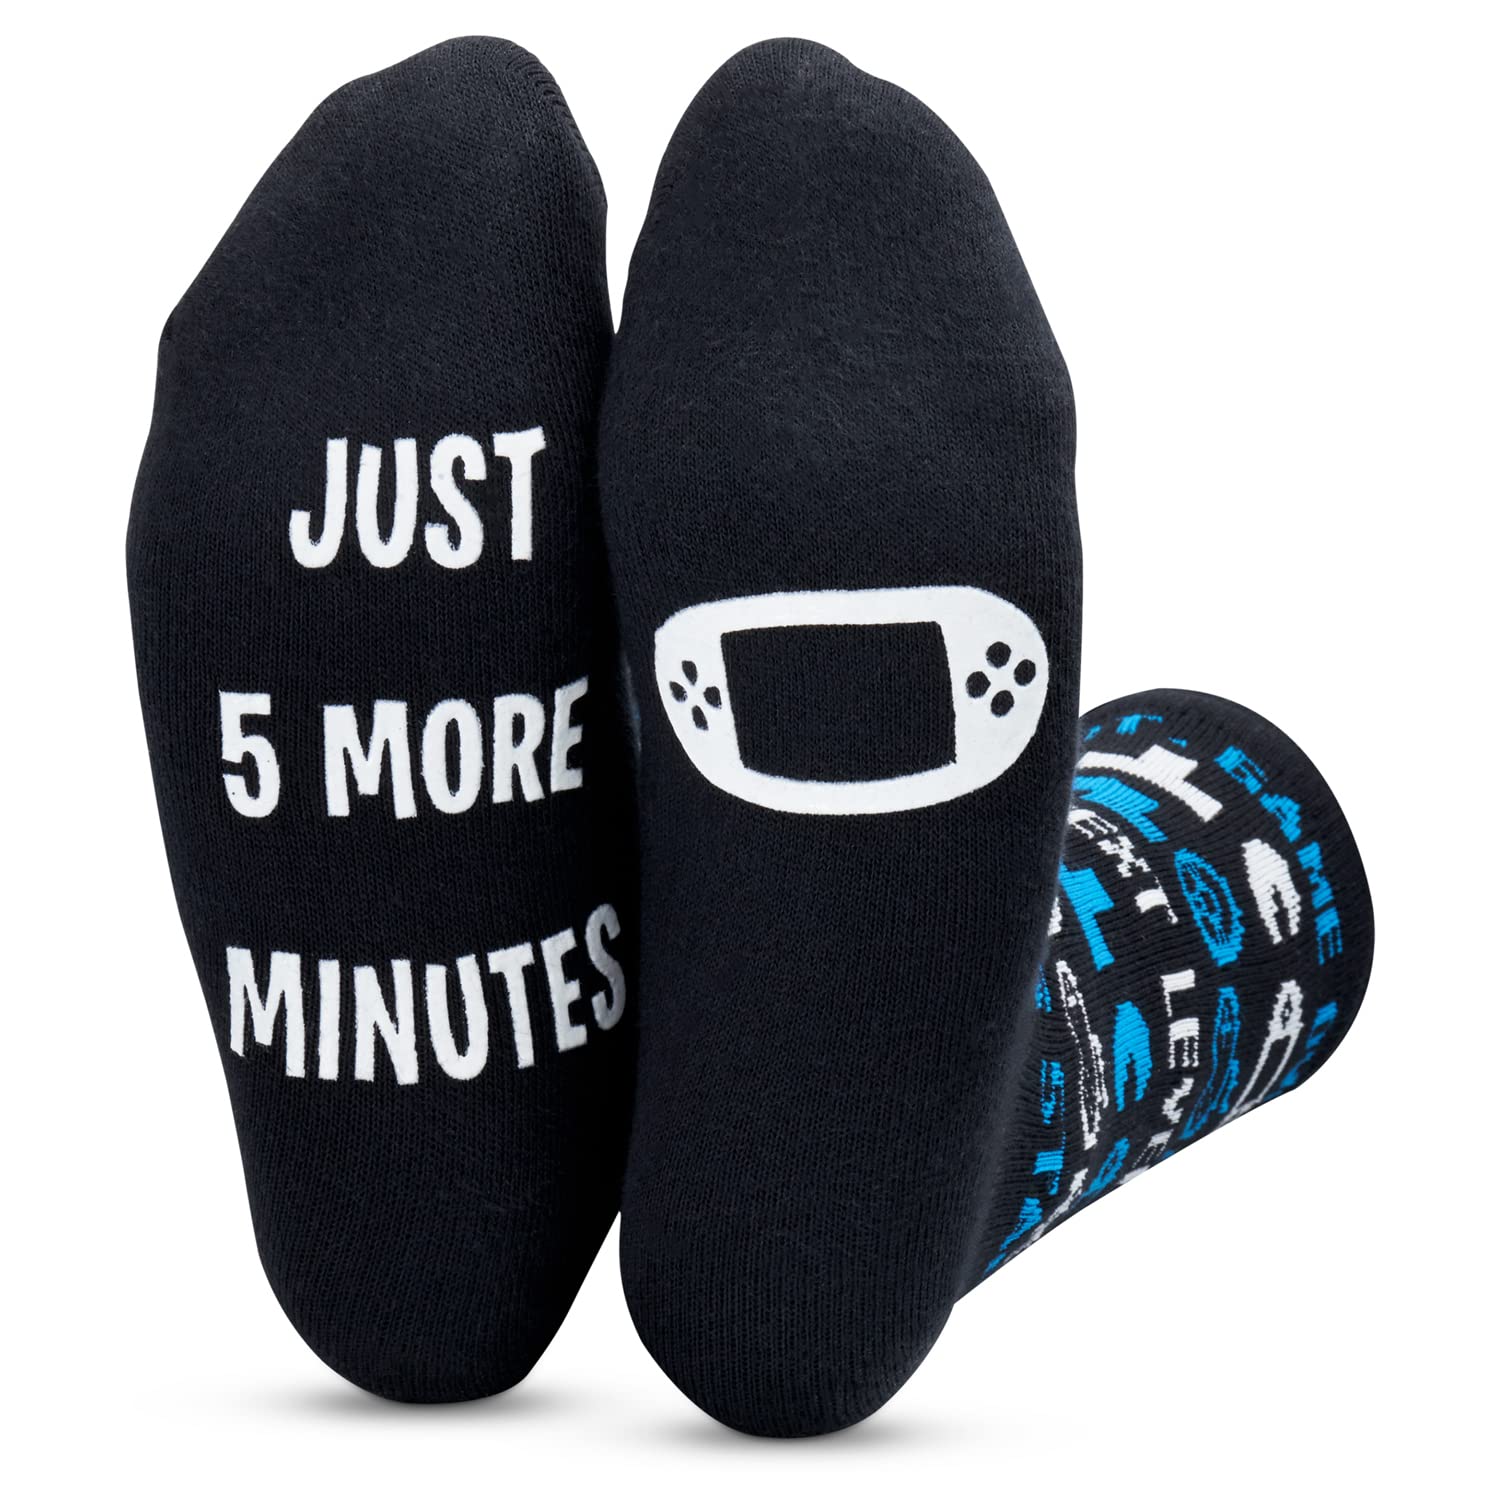 Kids Novelty Gaming Socks 2 Pack - 